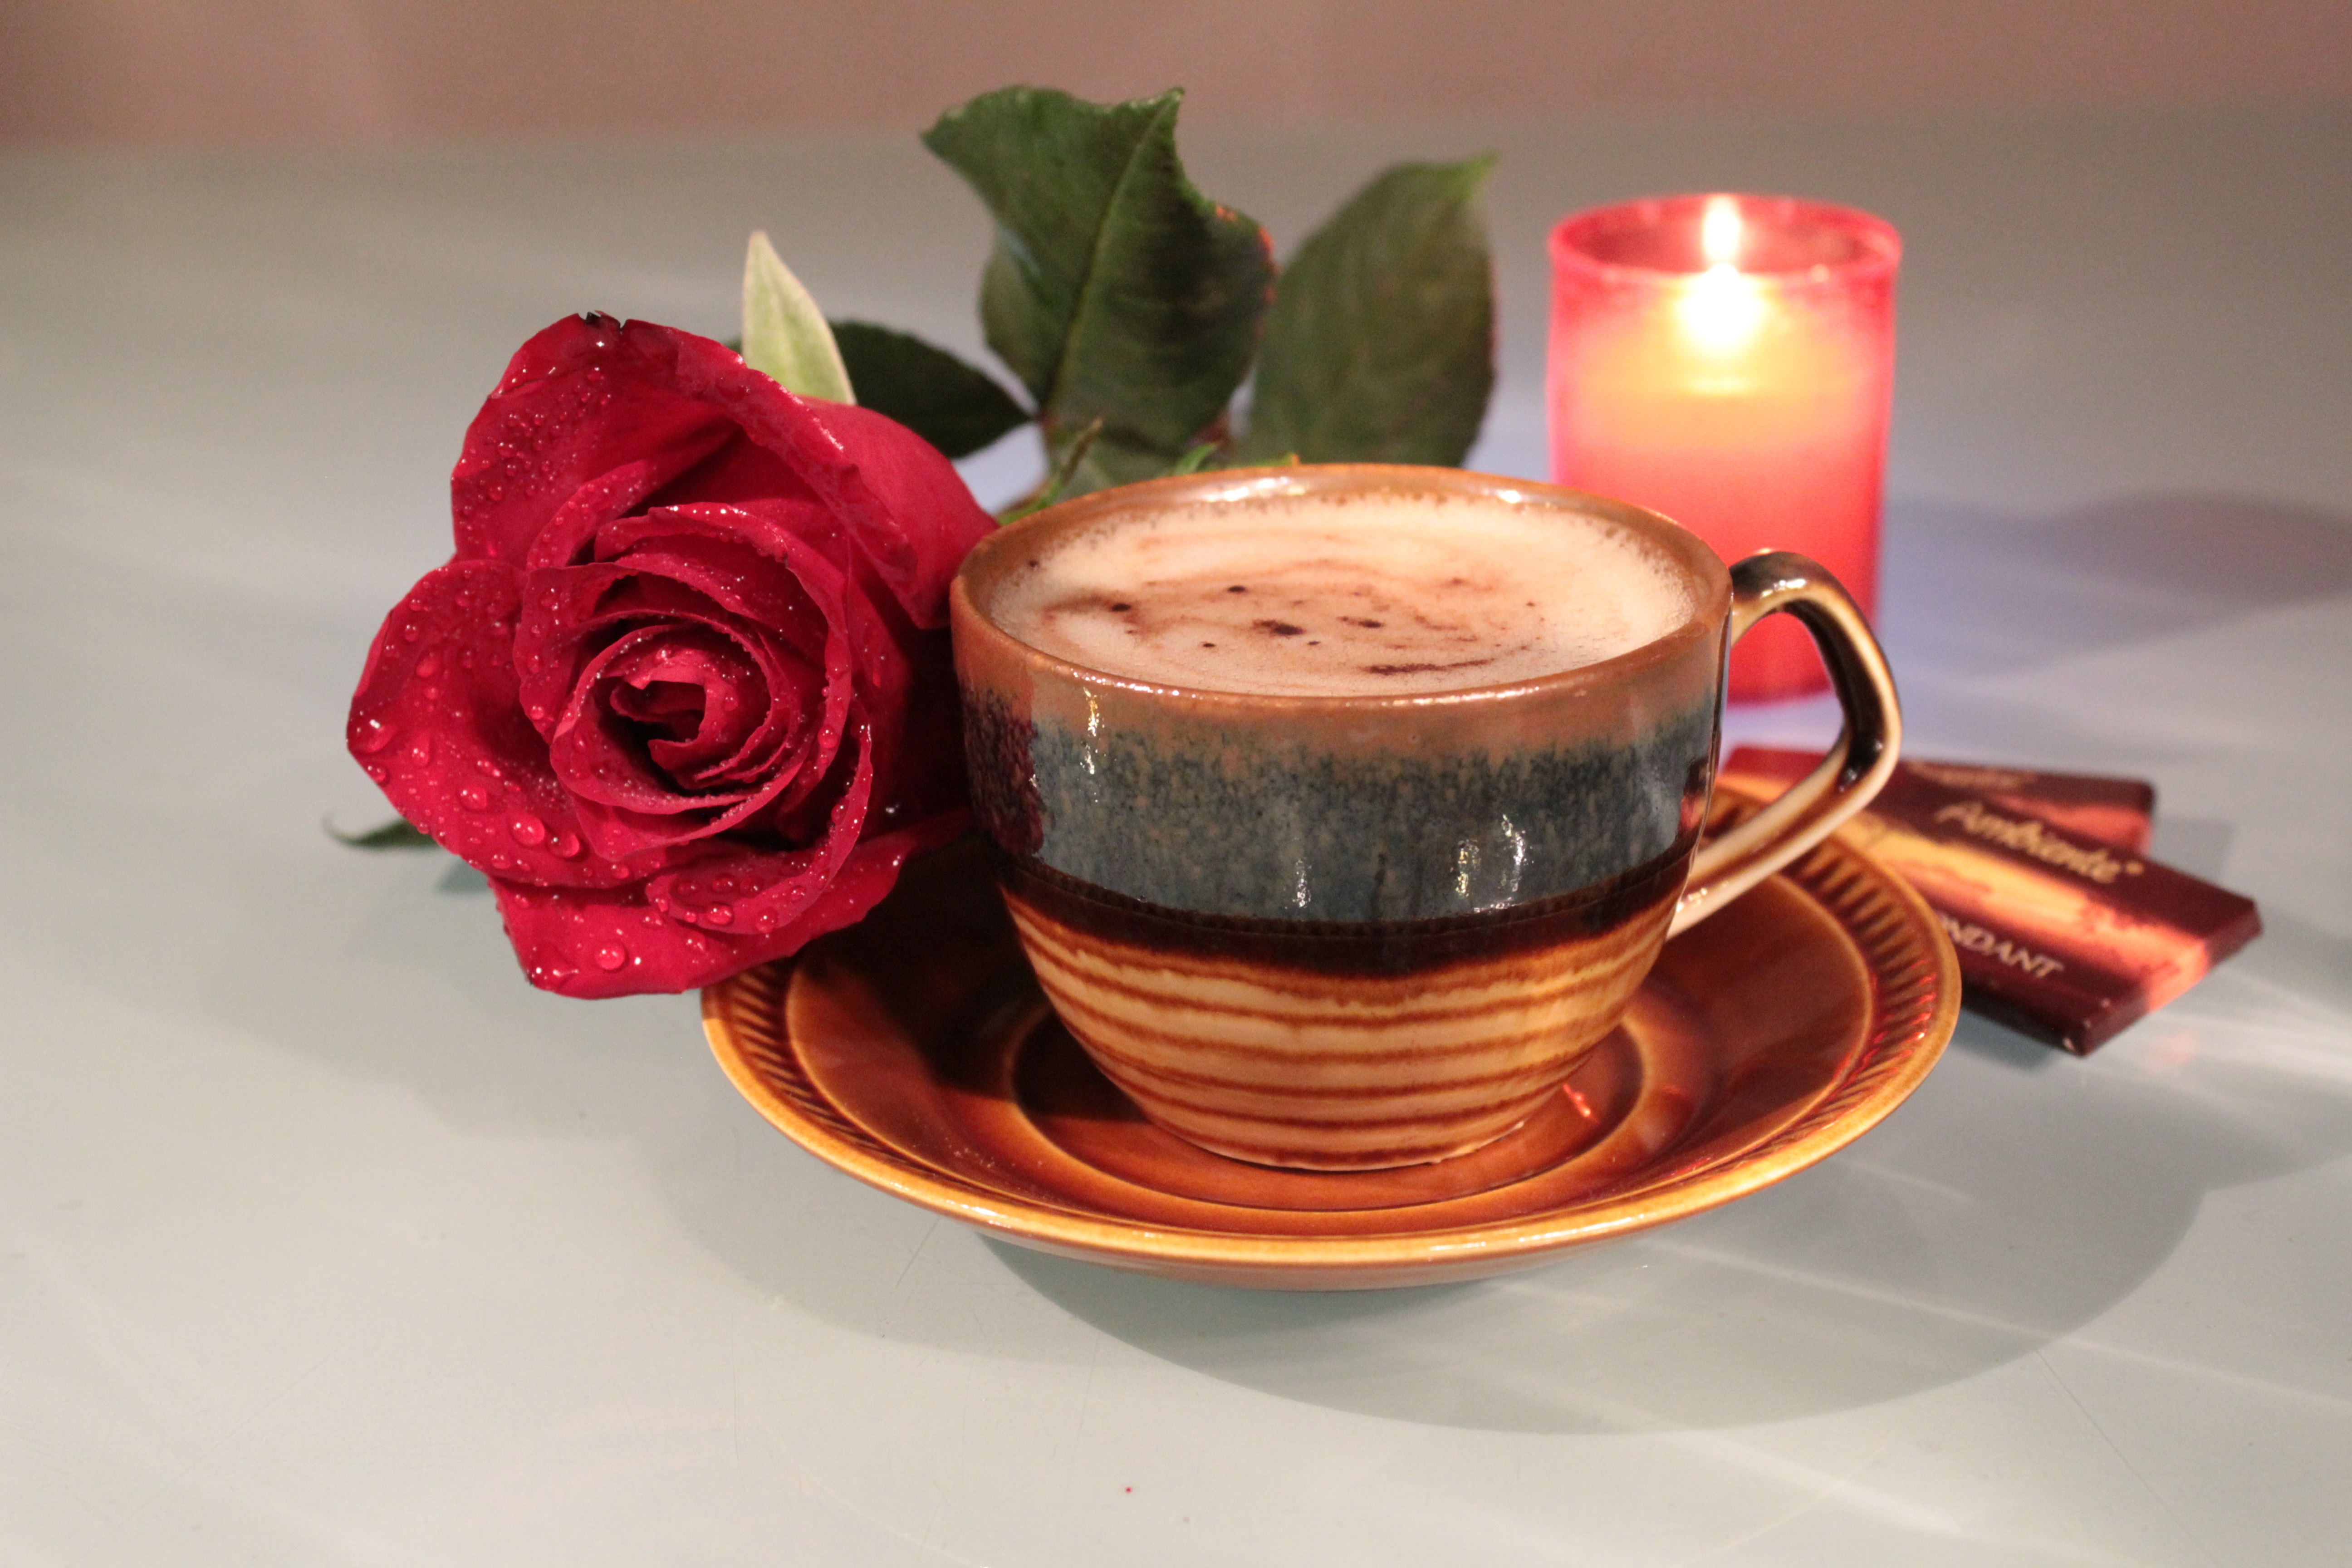 красивые картинки чашка кофе и цветы